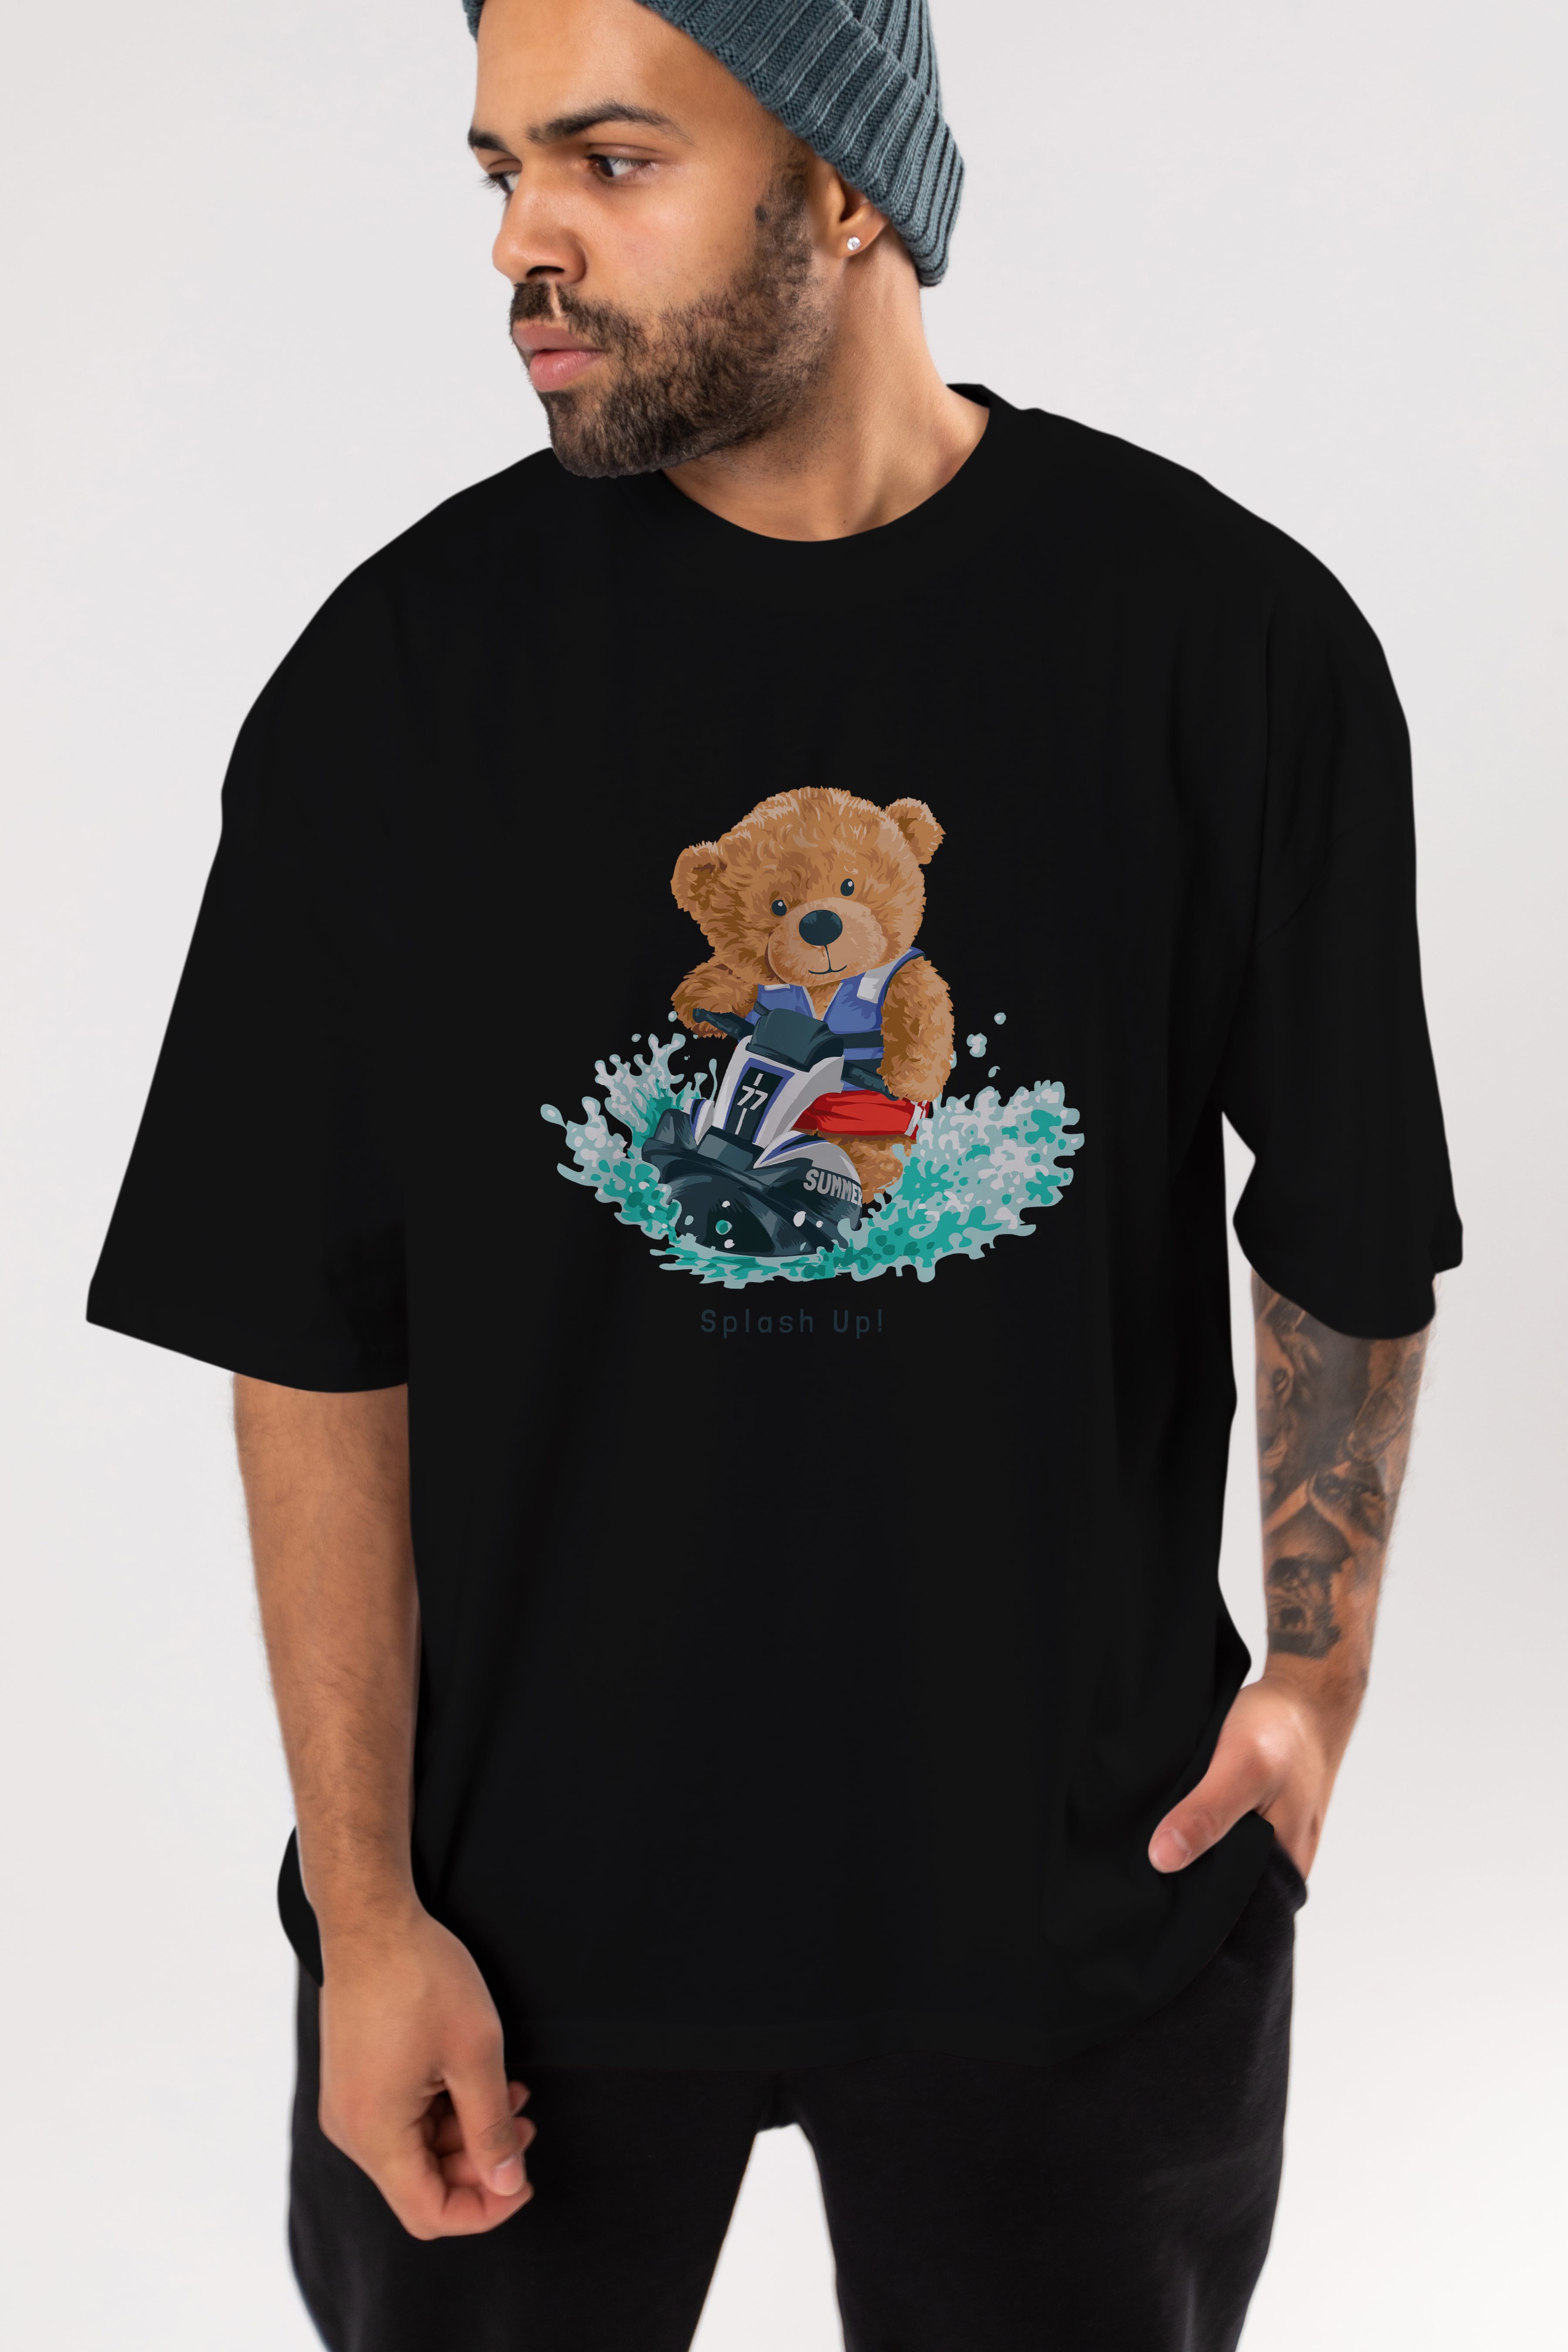 Teddy Bear Splash Up Ön Baskılı Oversize t-shirt Erkek Kadın Unisex %100 Pamuk